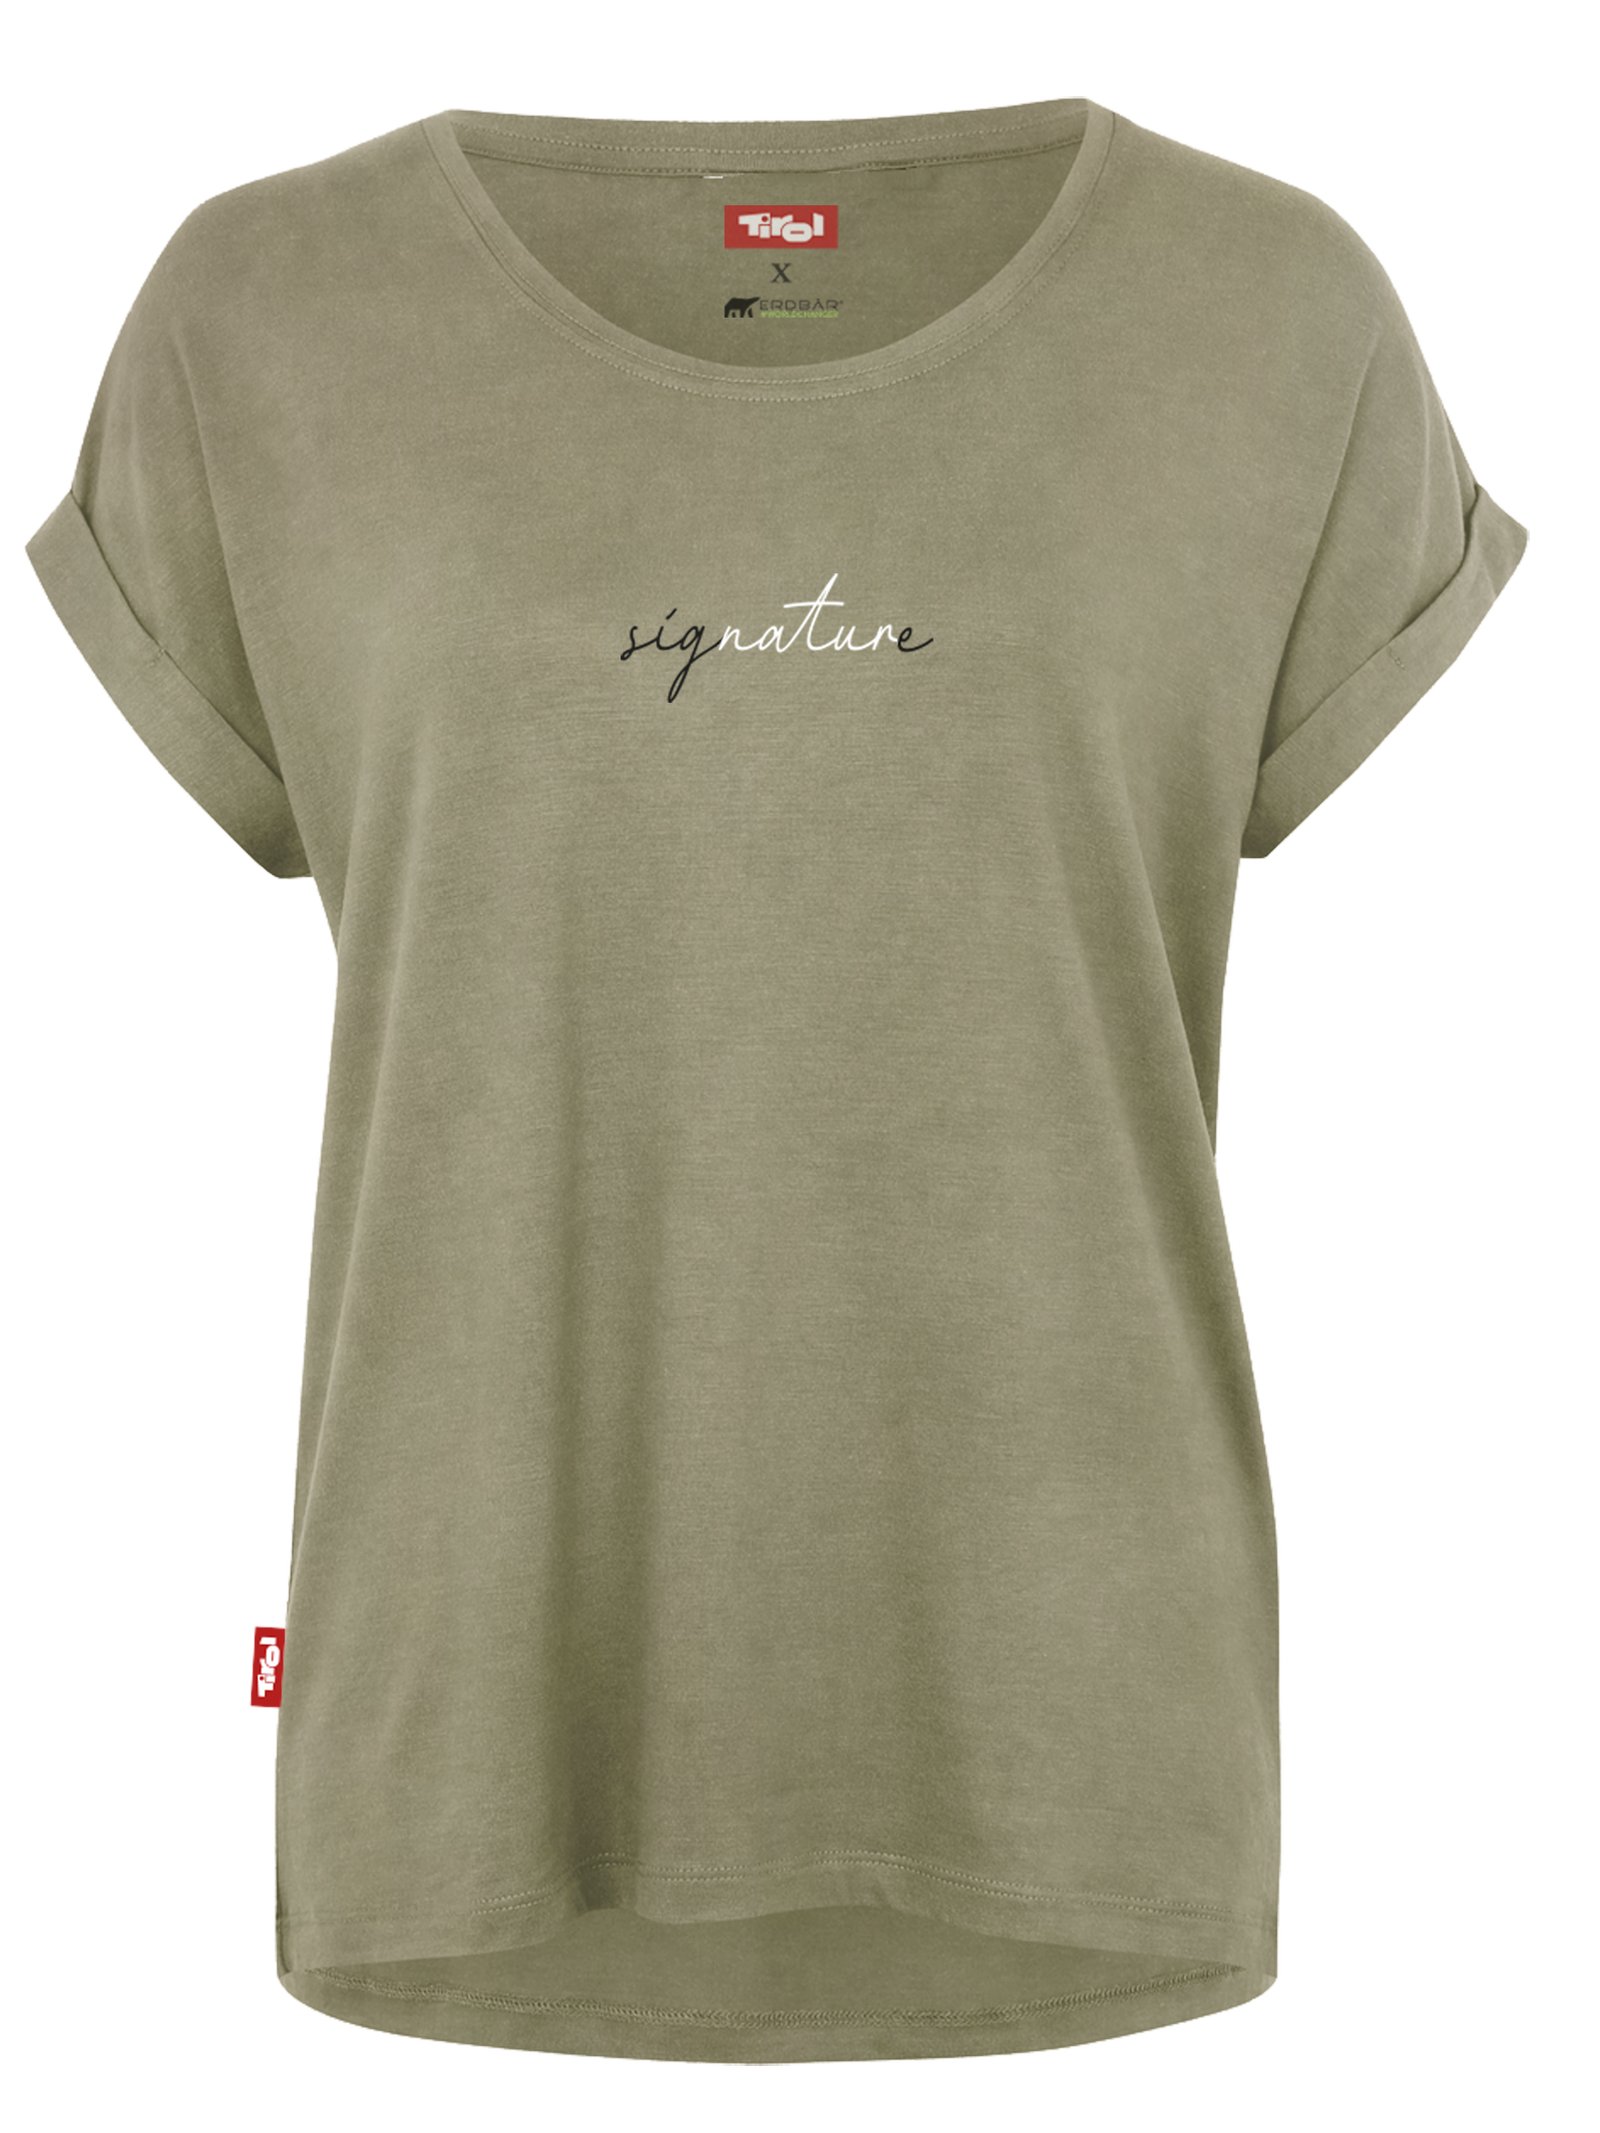 Damen T-Shirt "Signature" oliv